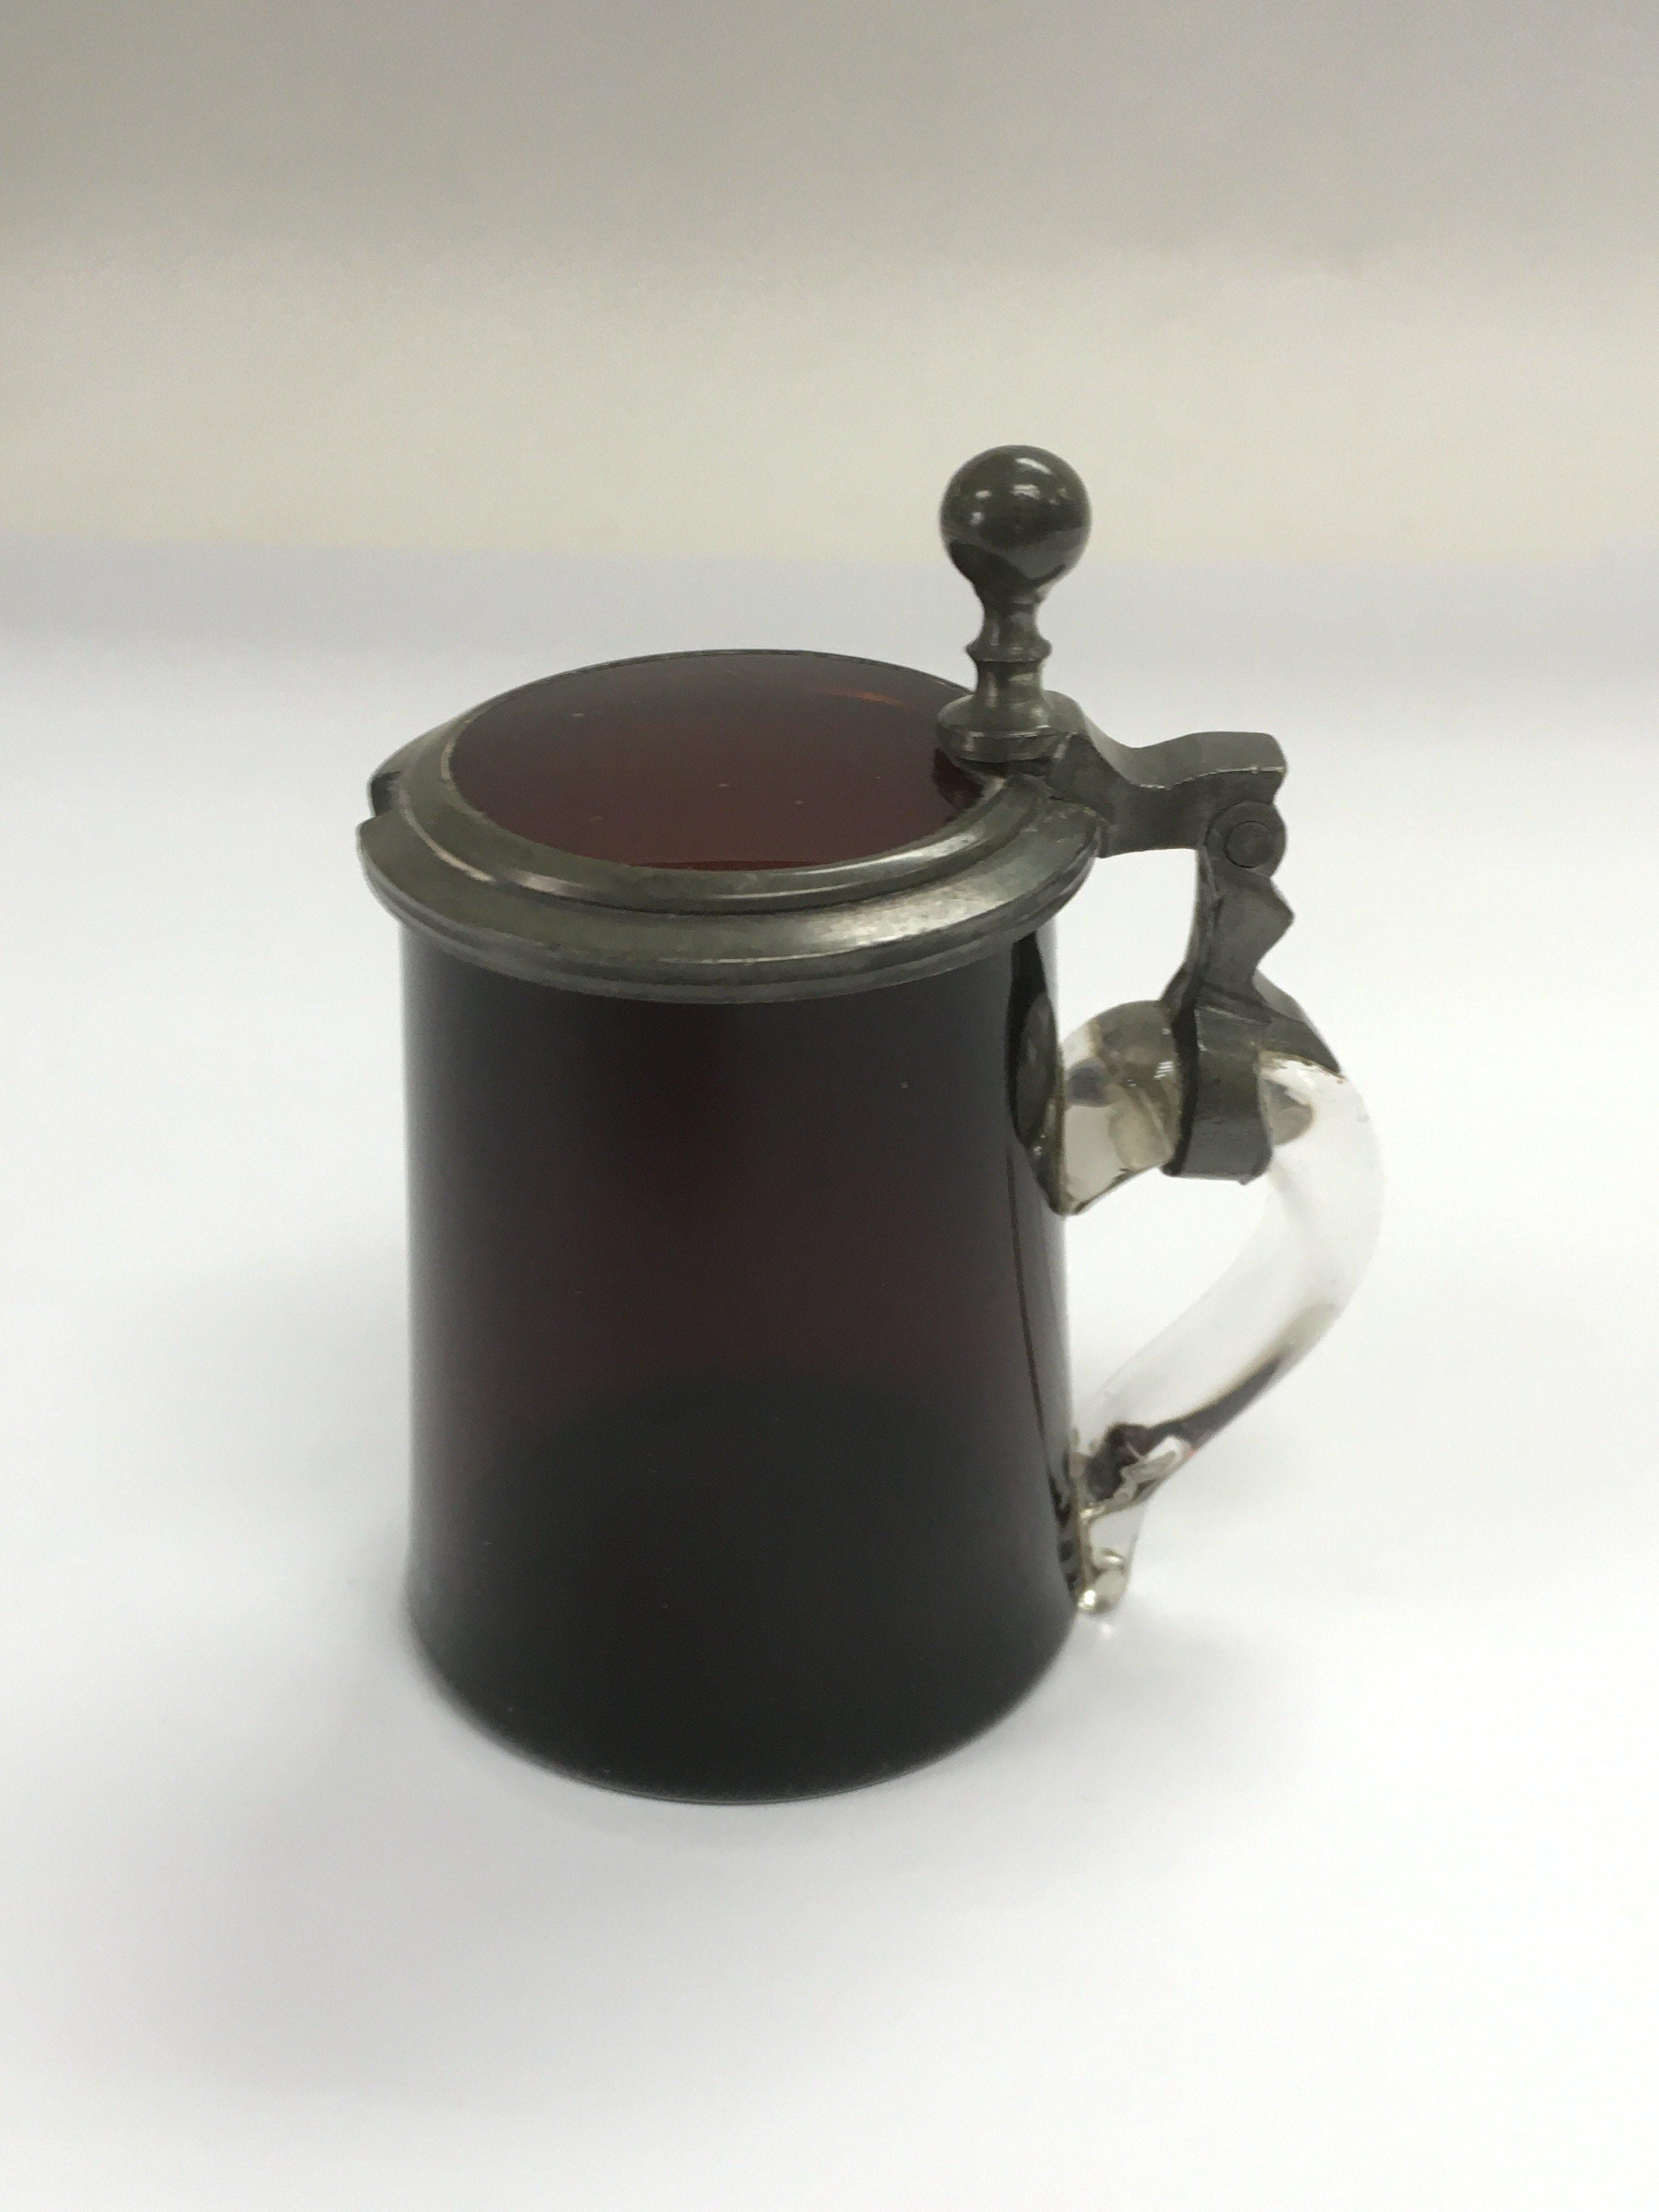 A cranberry glass mustard pot, approx height 8.5cm